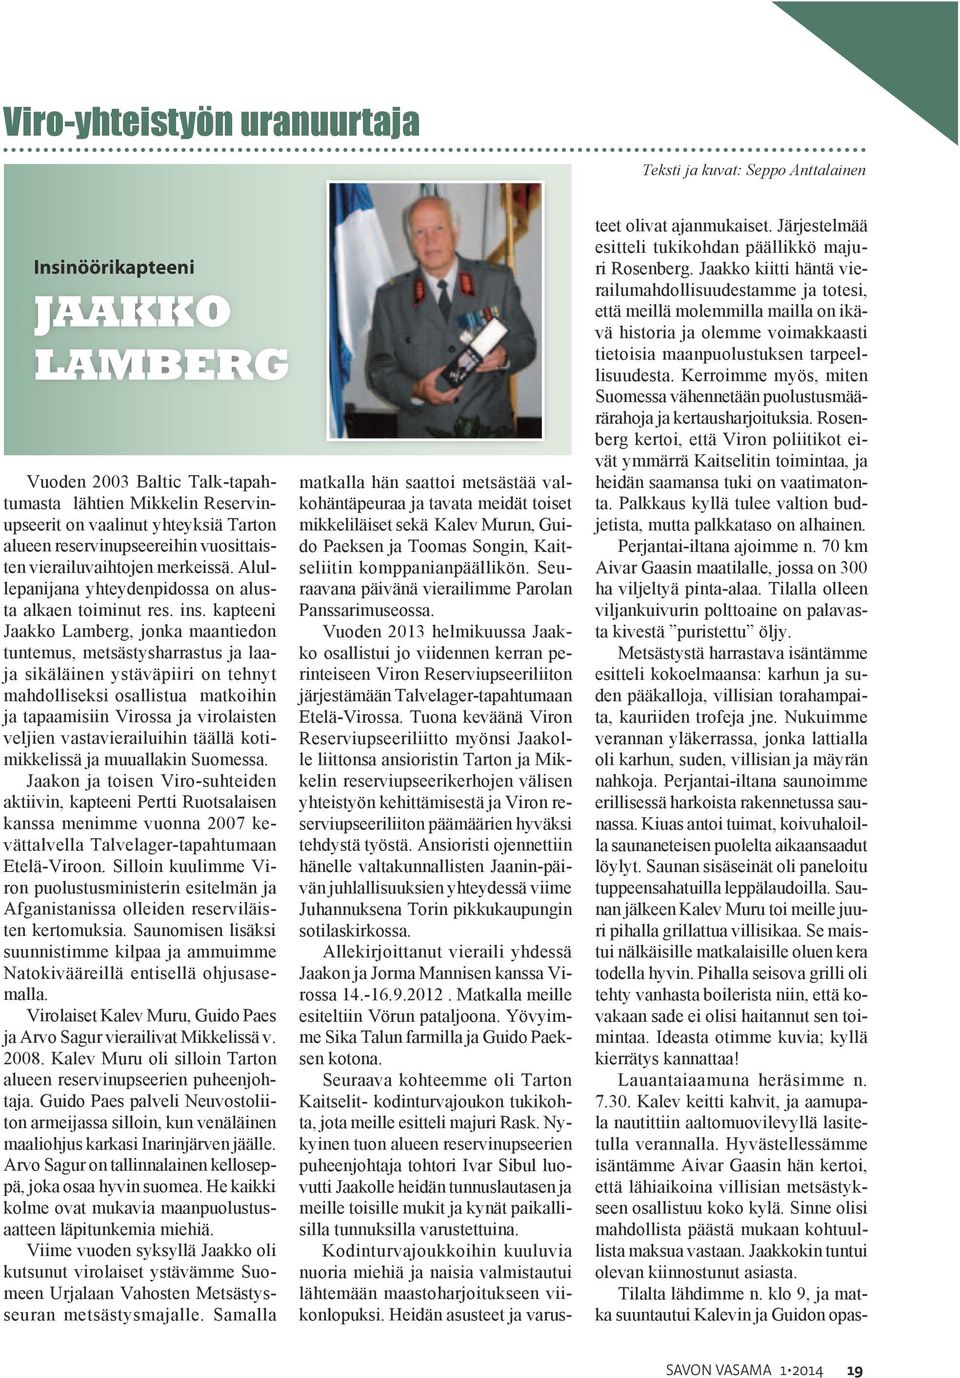 kapteeni Jaakko Lamberg, jonka maantiedon tuntemus, metsästysharrastus ja laaja sikäläinen ystäväpiiri on tehnyt mahdolliseksi osallistua matkoihin ja tapaamisiin Virossa ja virolaisten veljien